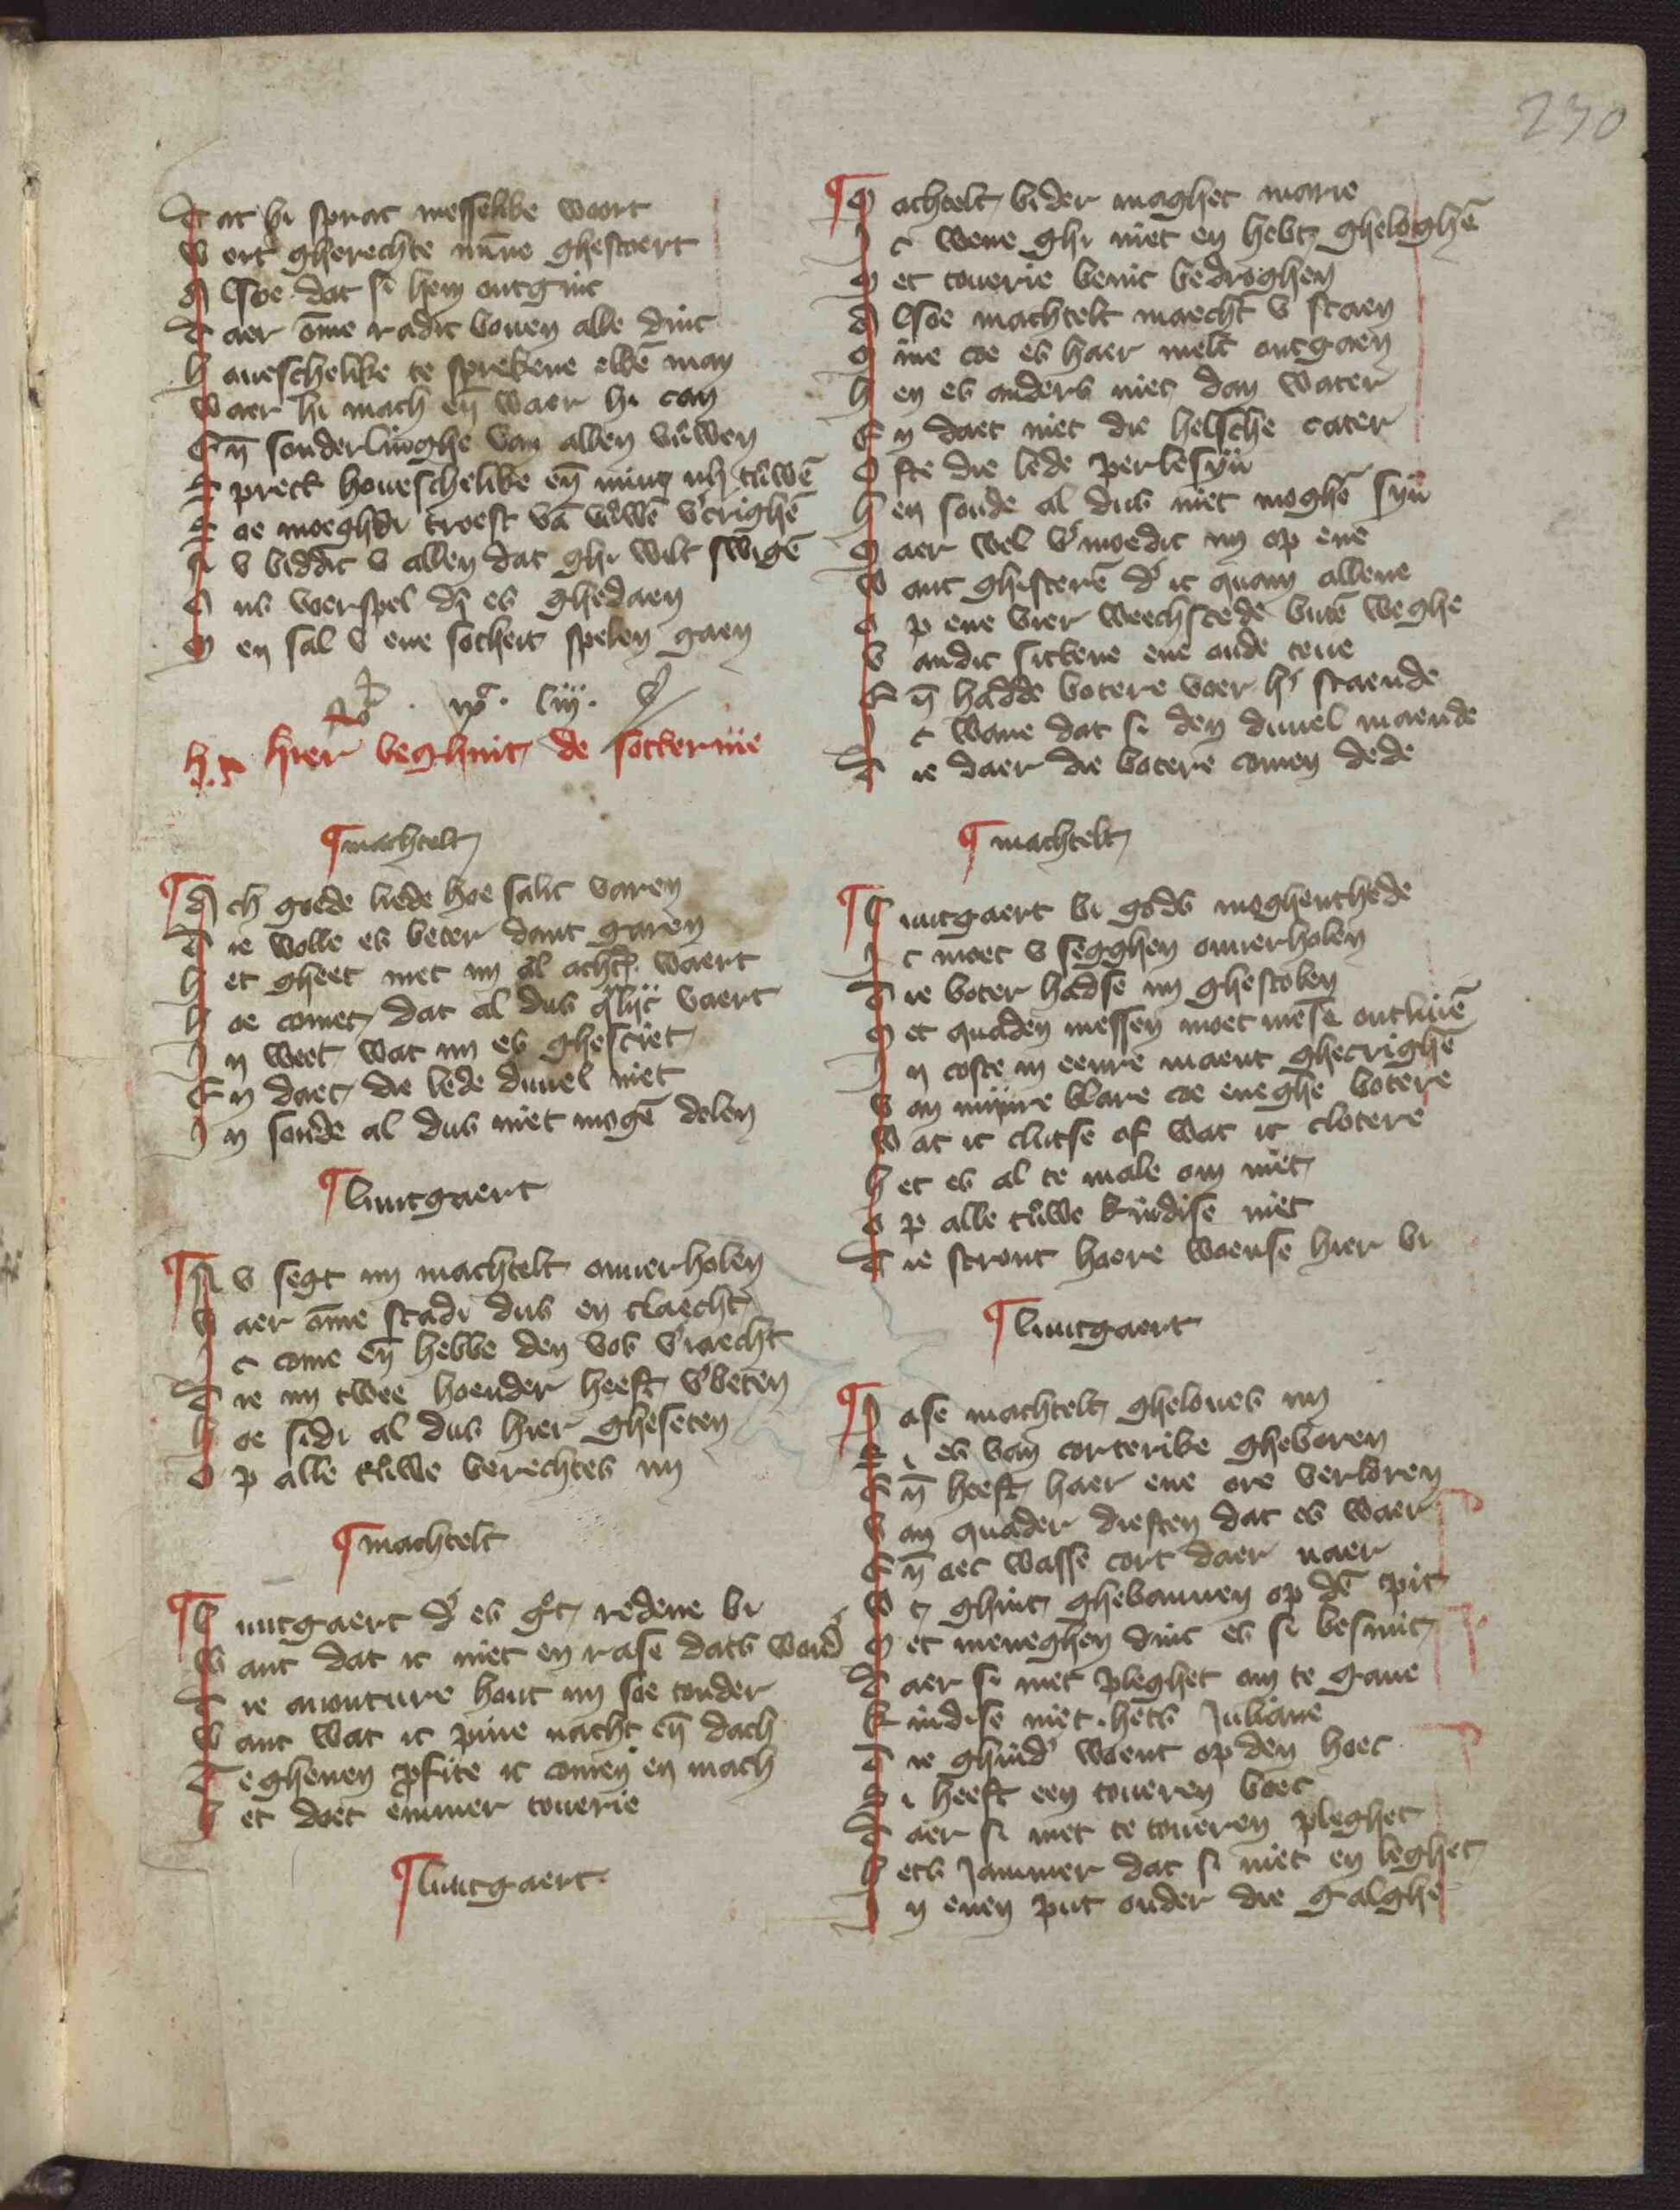 25. Handschrift-Van Hulthem, klucht Die hexe